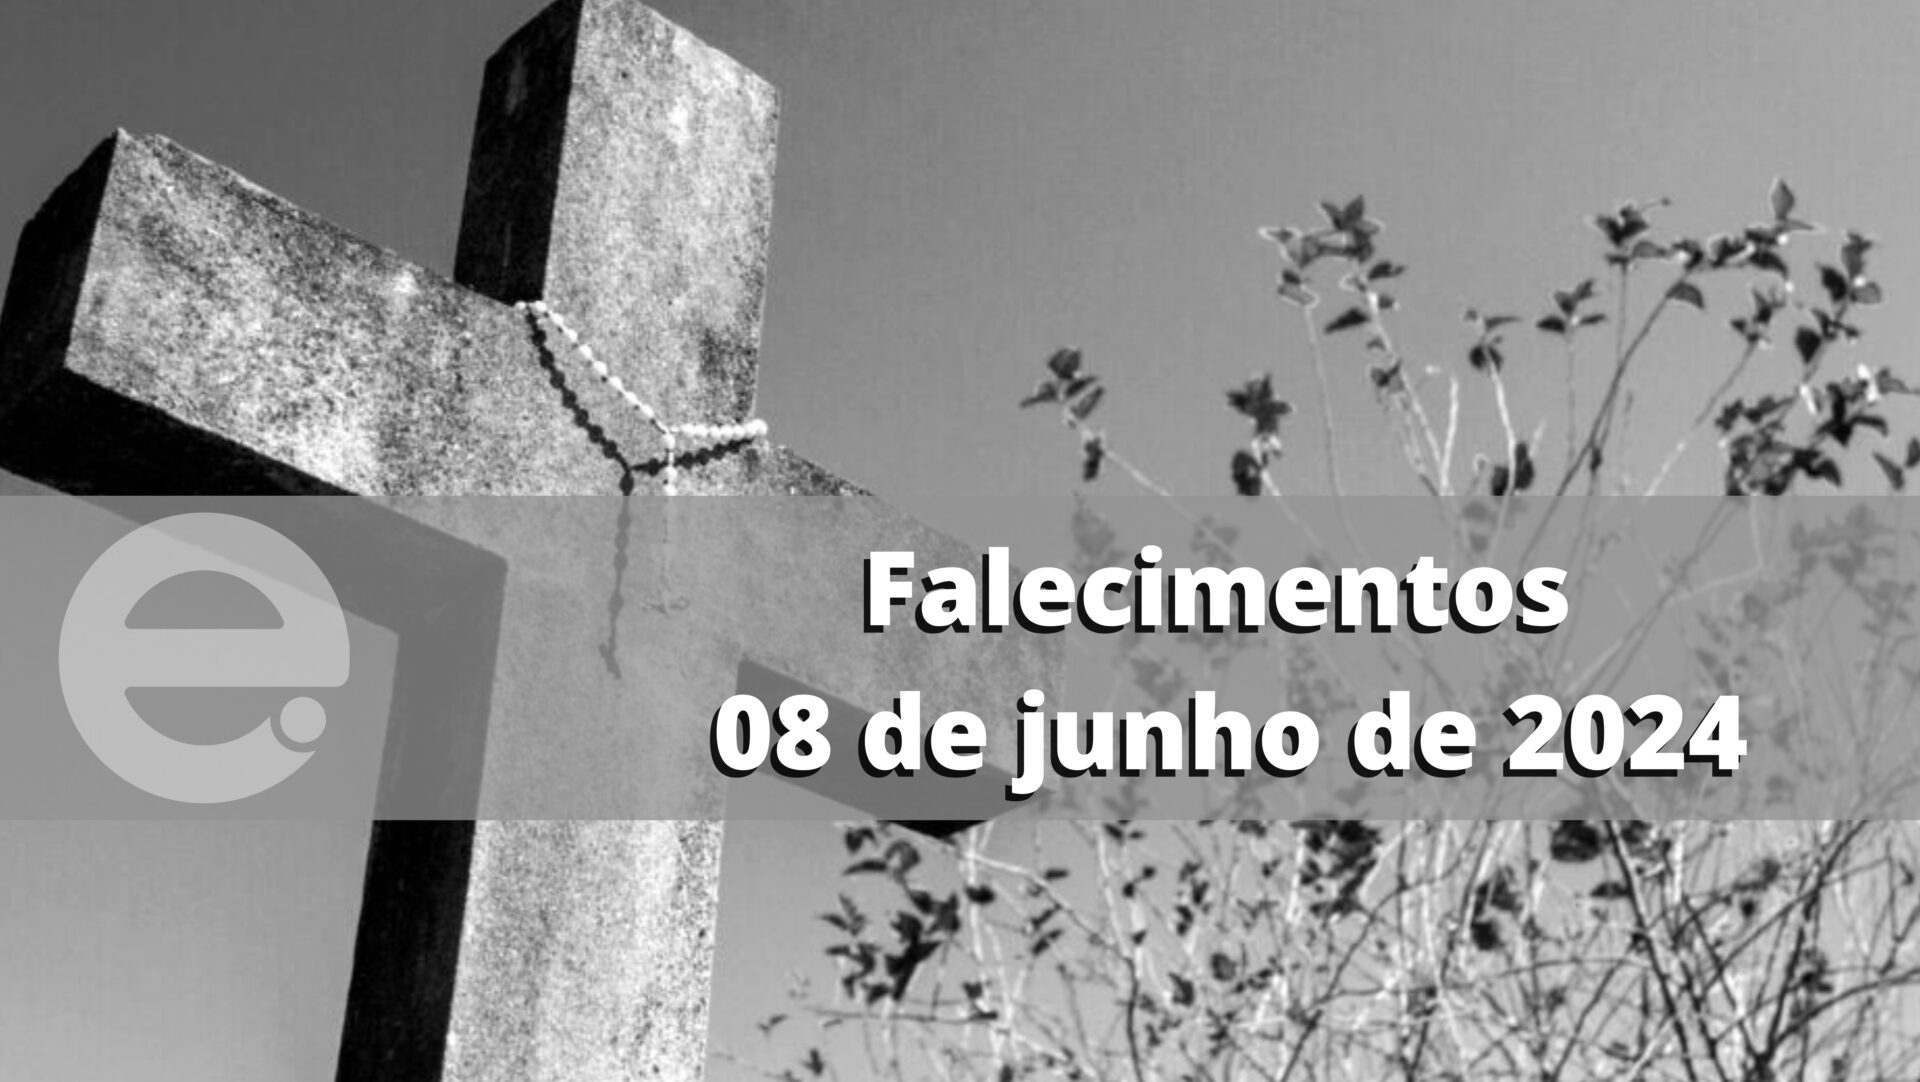 Confira os falecimentos deste sábado, 08 de junho de 2024, em Limeira